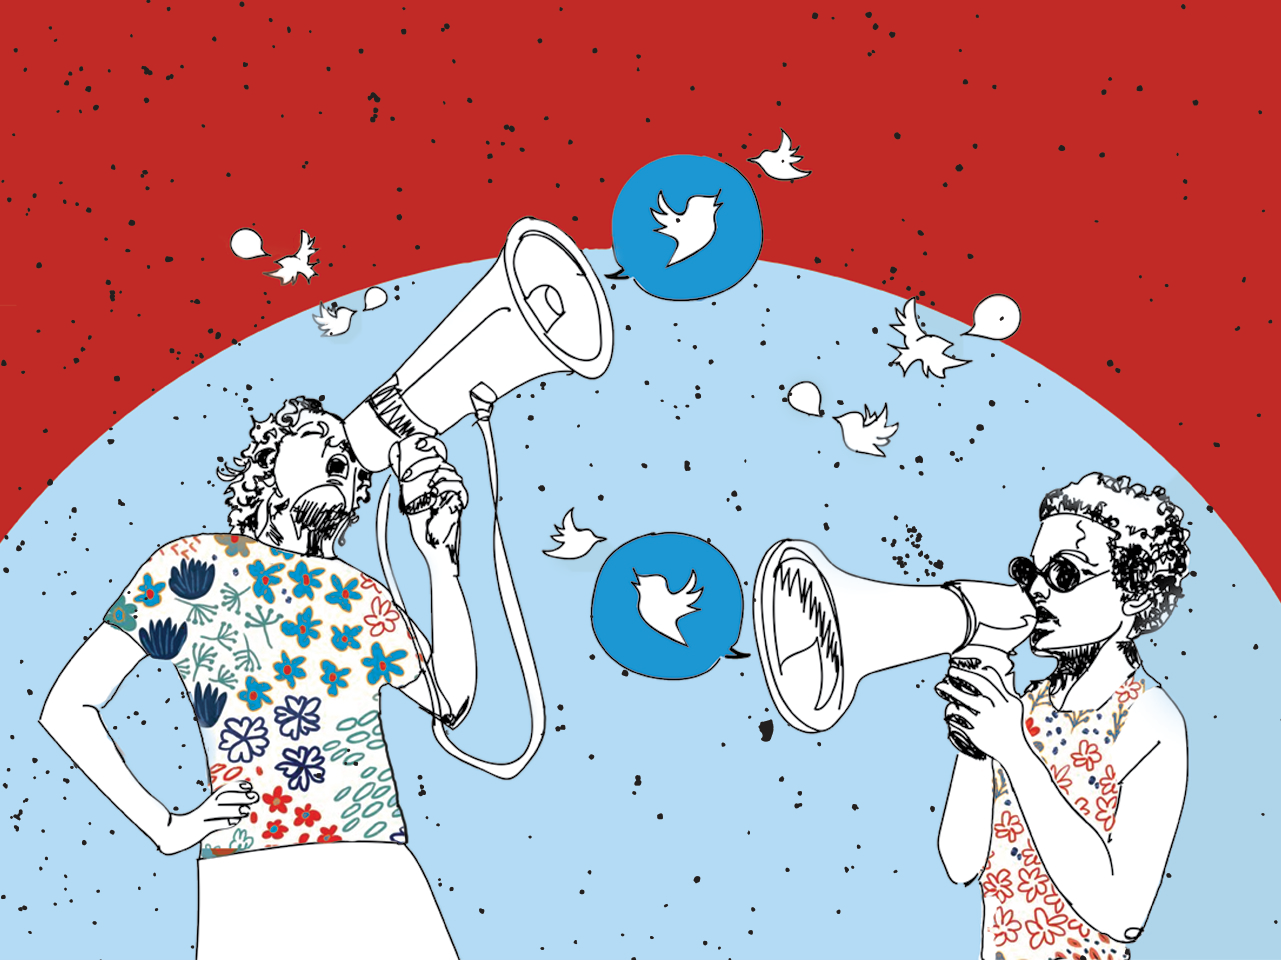 Ferramenta digital para proteger jornalistas de ataques no Twitter